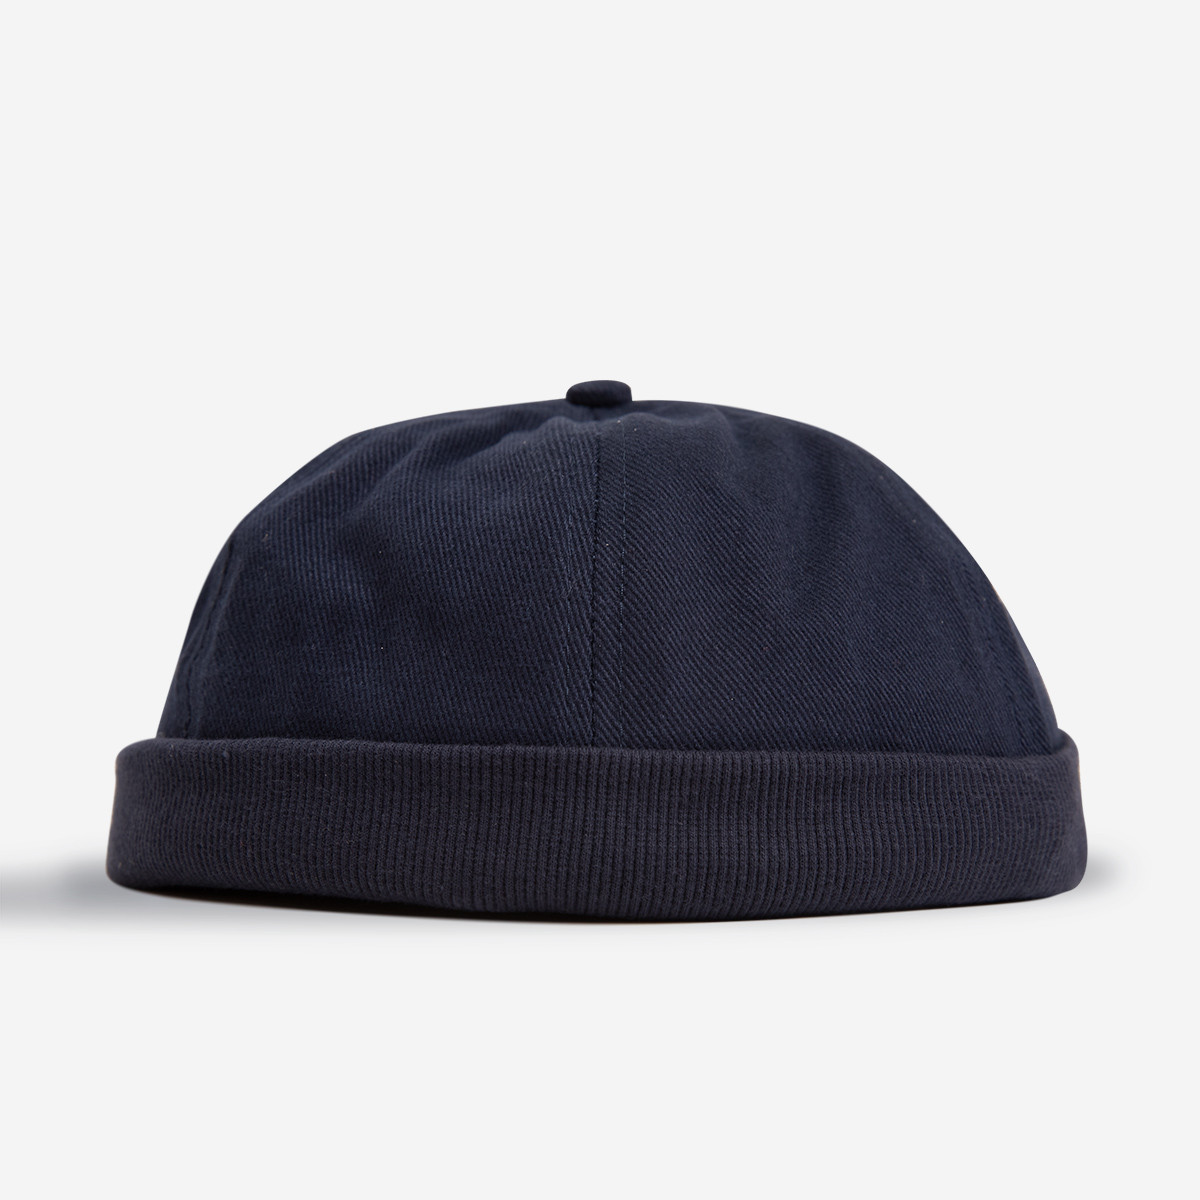 L'incontournable accessoire Breton - LE bonnet marin Miki en coton -  All'Océan